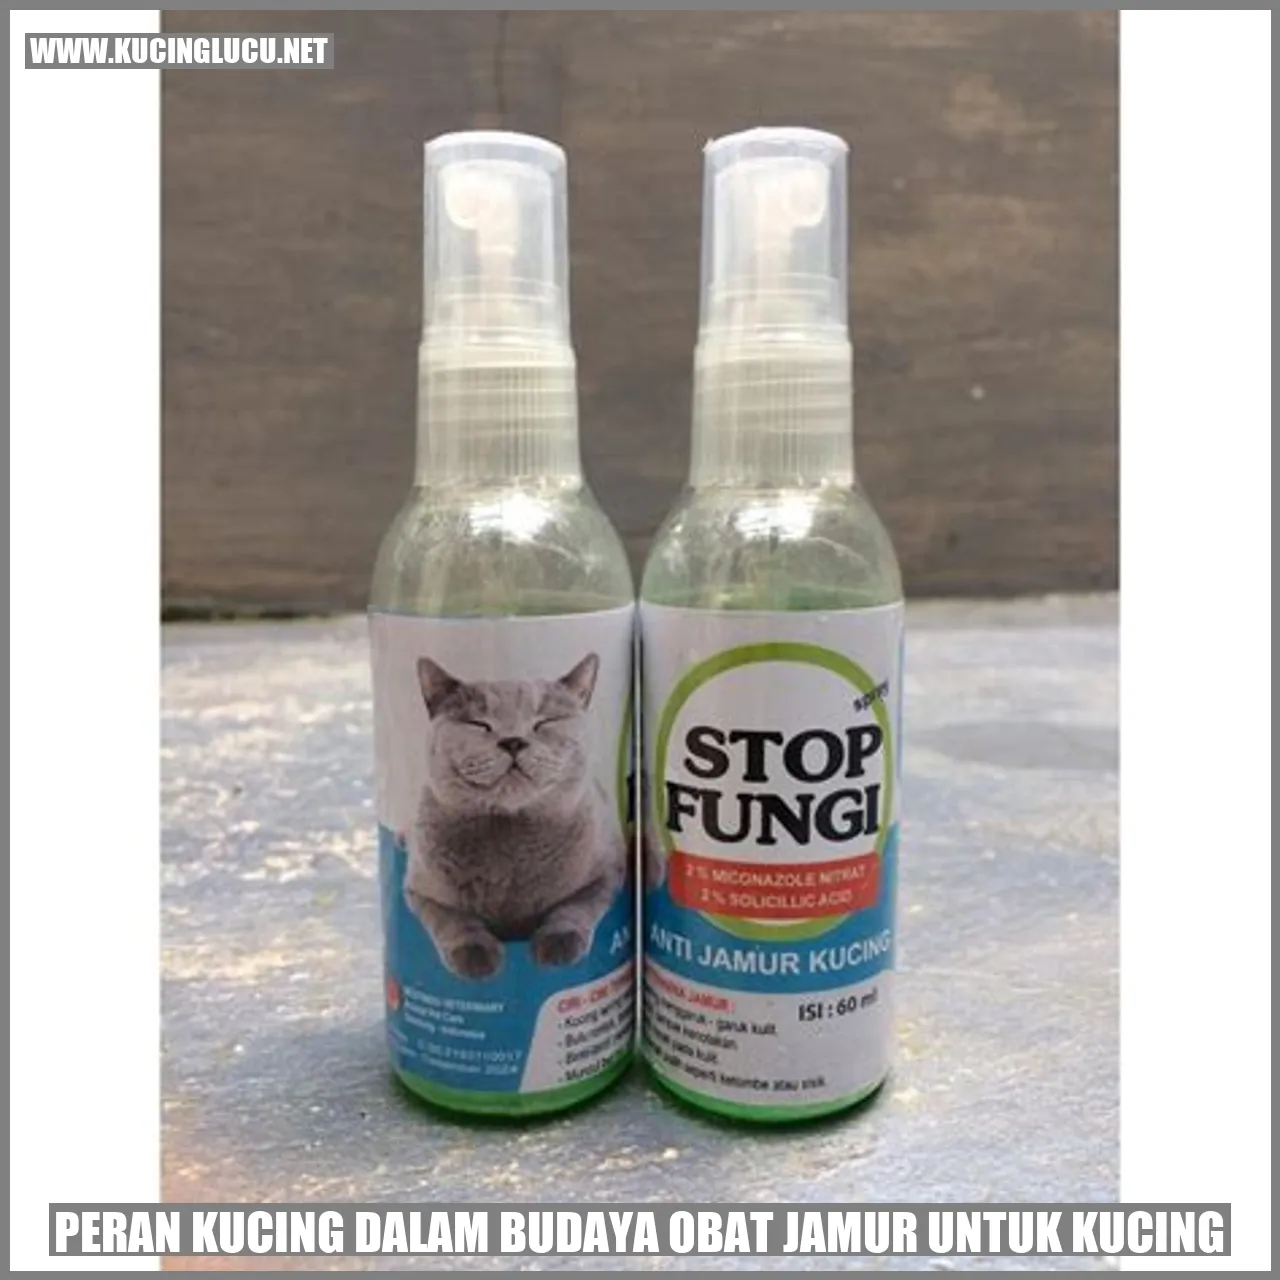 Peran Kucing dalam Budaya obat jamur untuk kucing